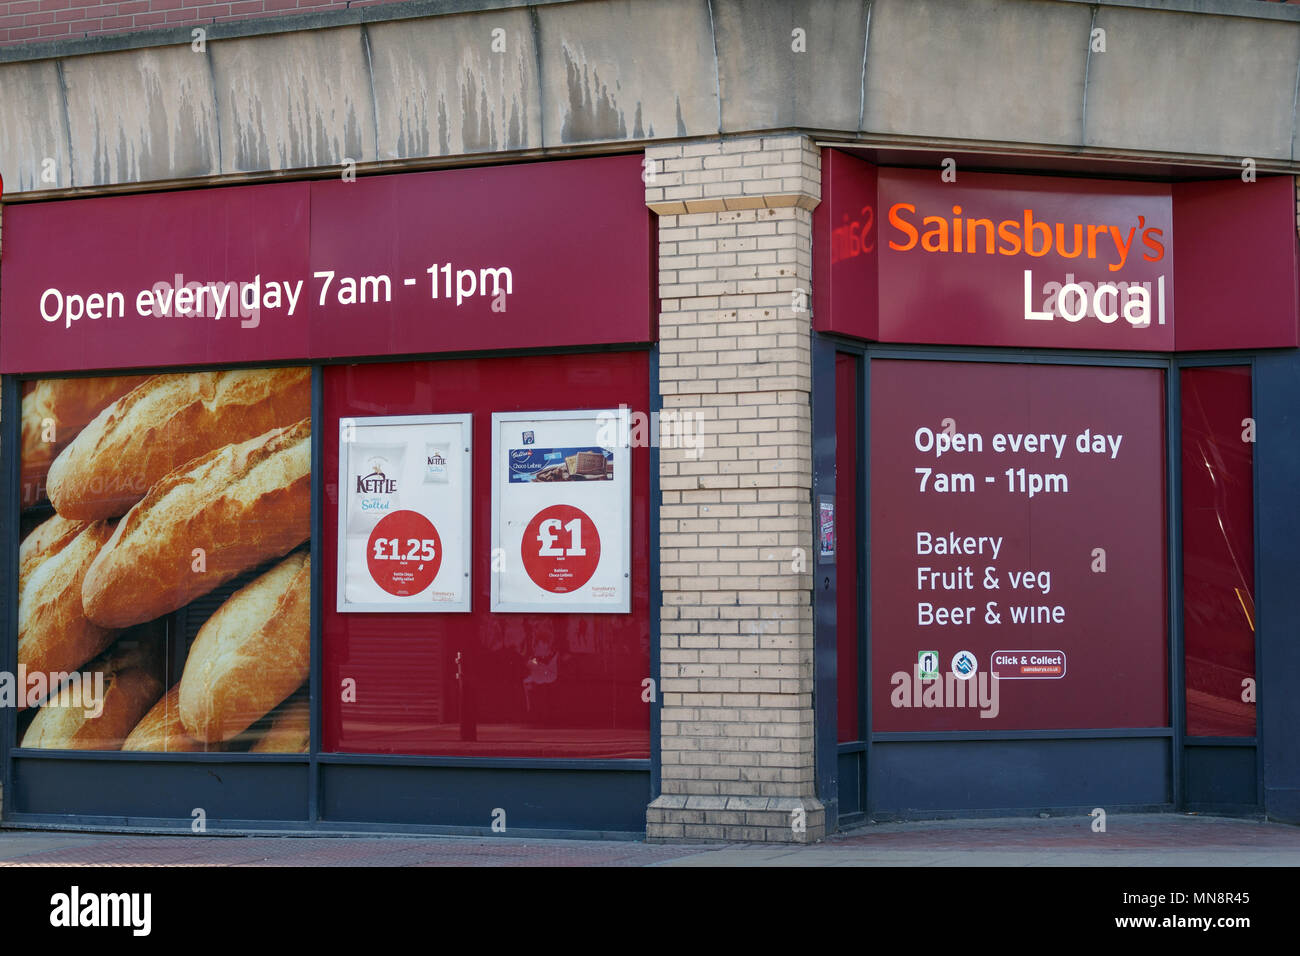 Un Sainsbury's locale in Regno Unito / Sainsbury's logo locale, Sainsbury's convenience store. Foto Stock